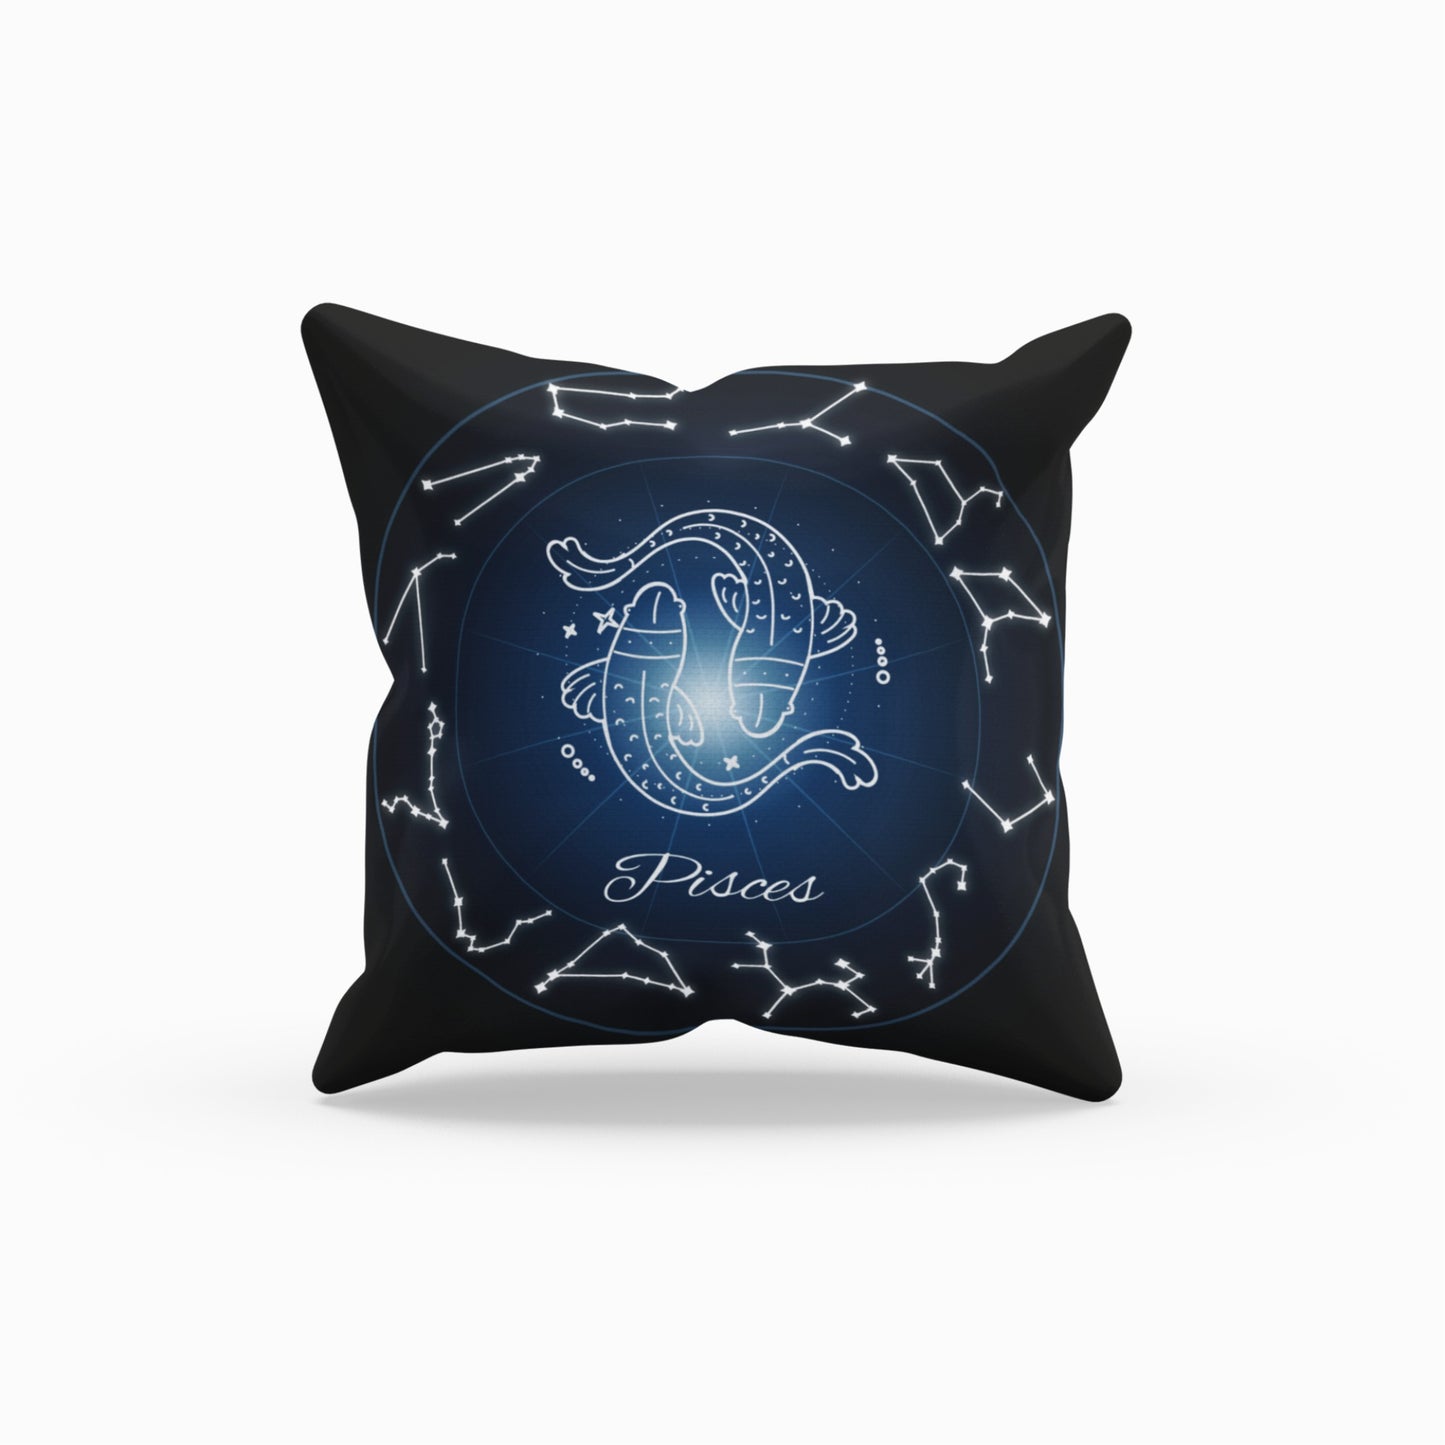 Homeezone's Pisces Horoscope Theme Pillow